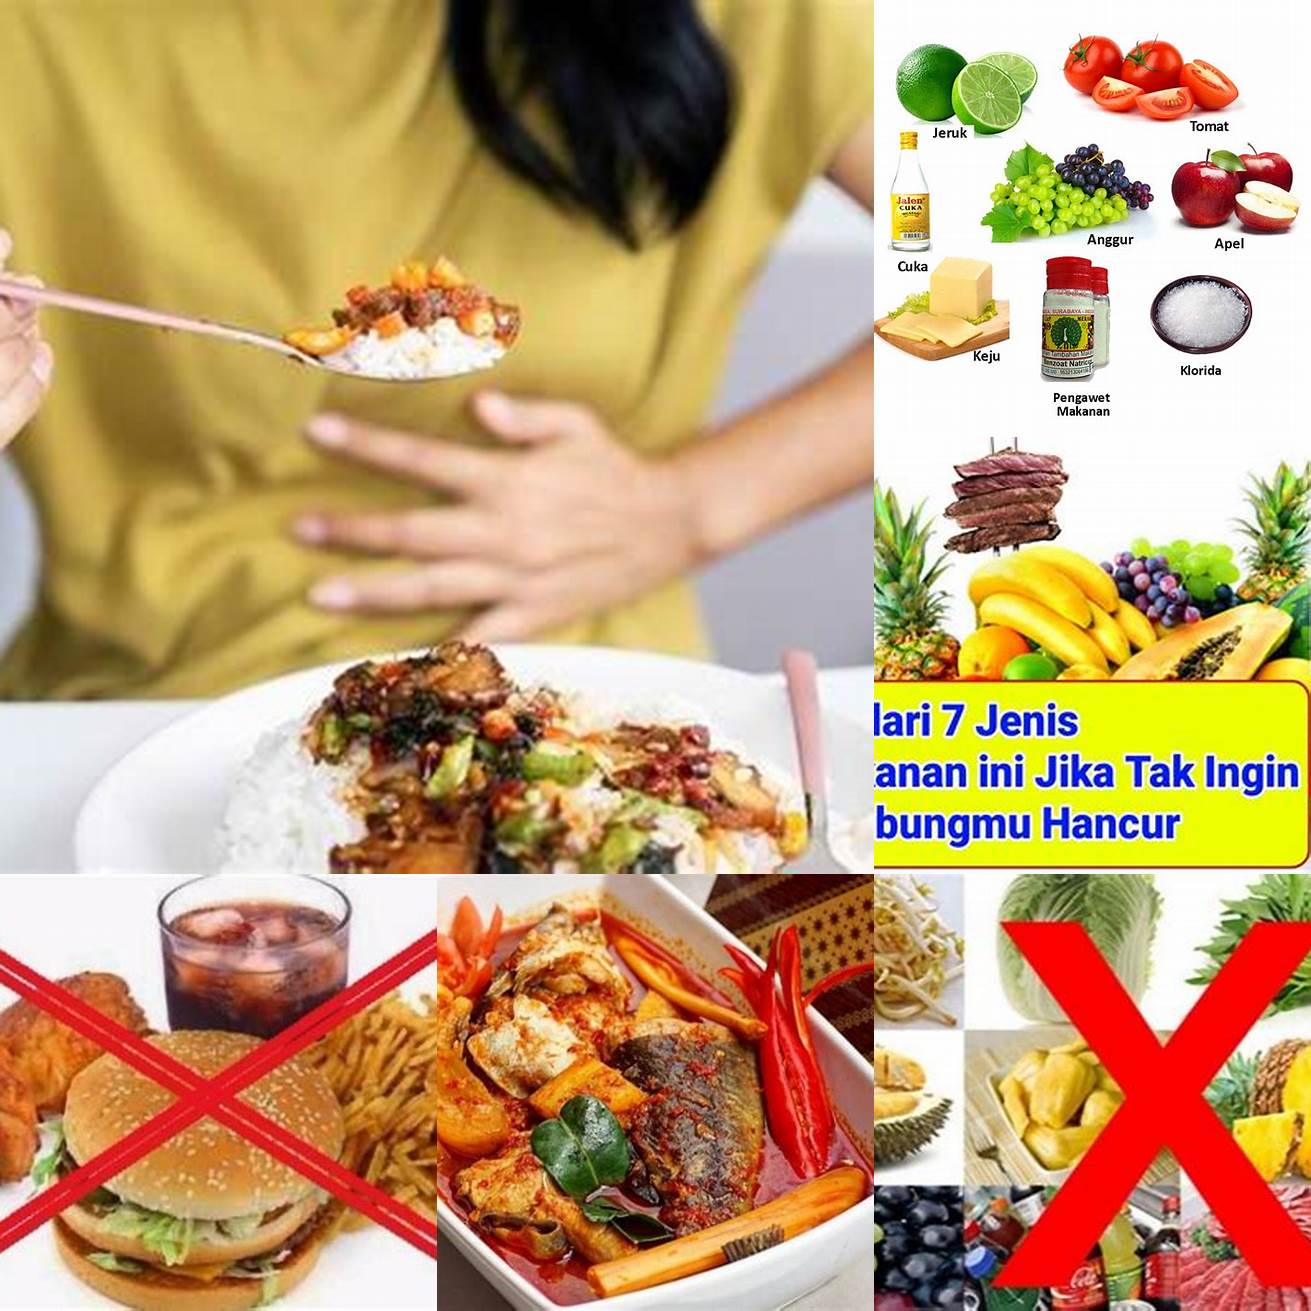 Hindari makanan yang pedas dan asam